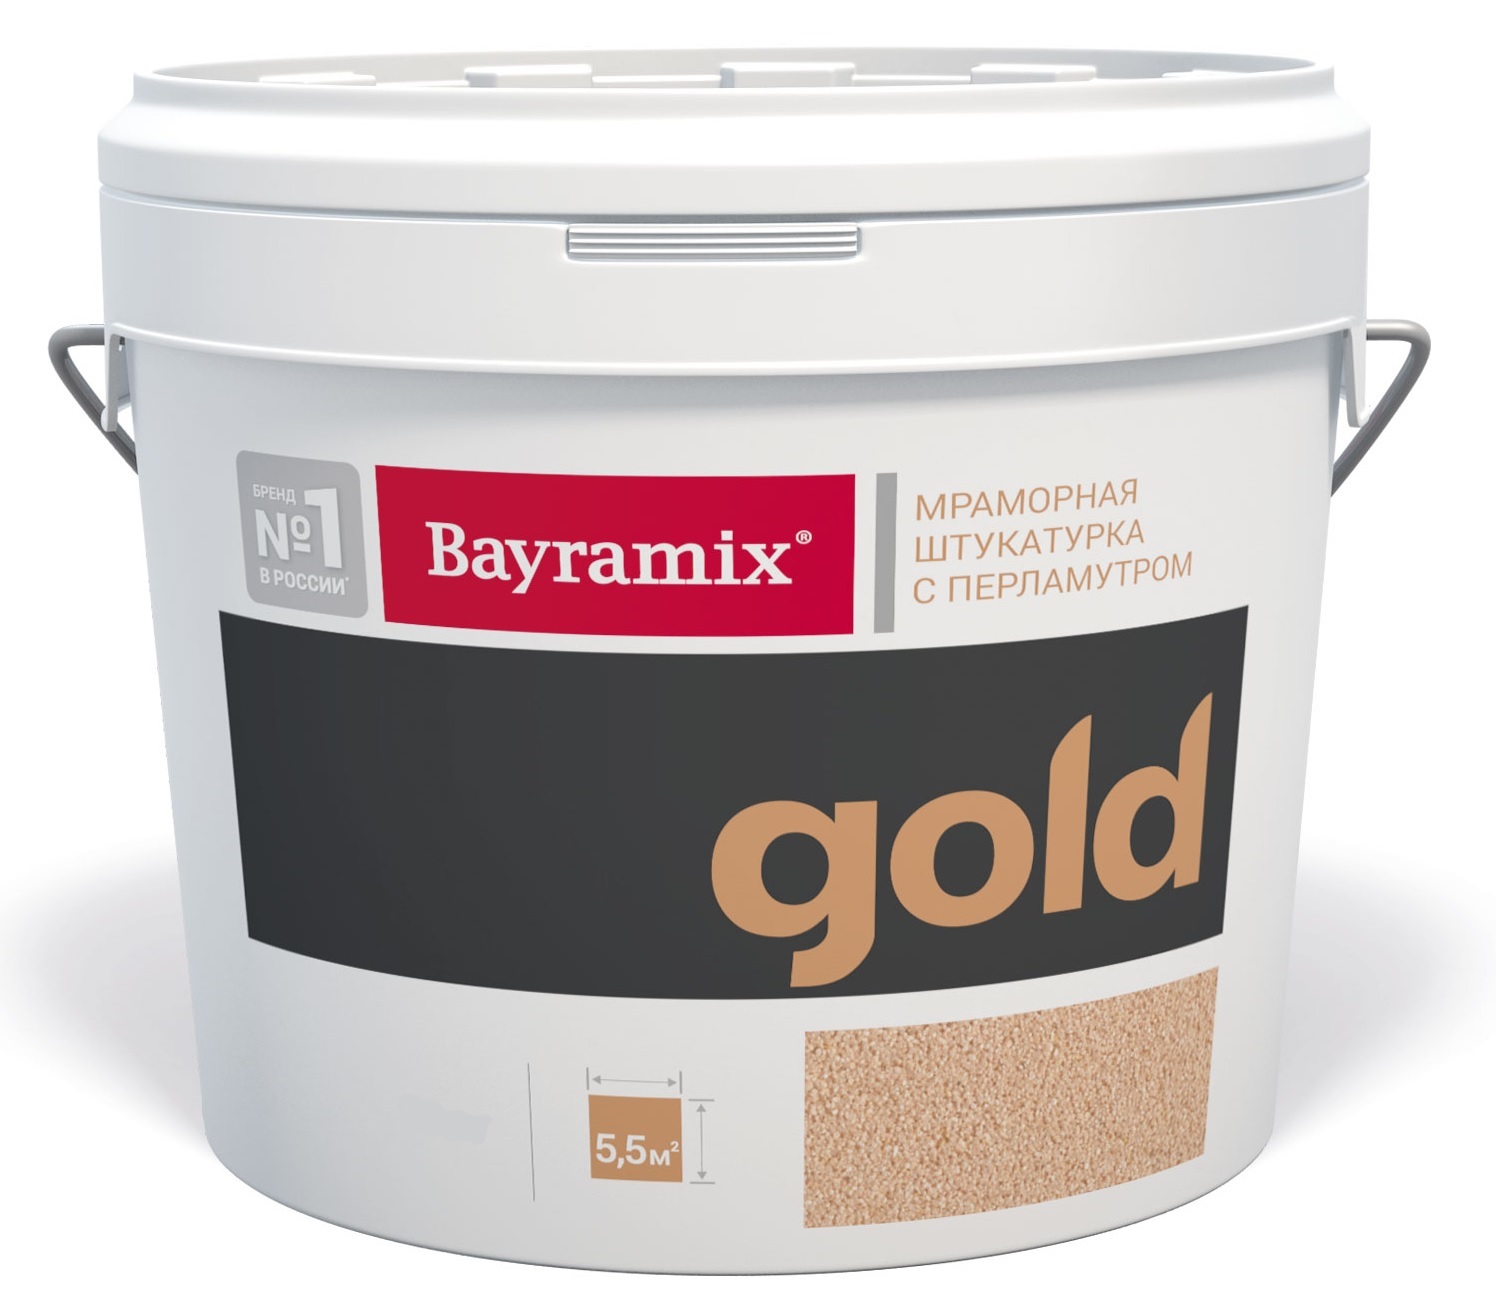 Bayramix Mineral Gold.jpg